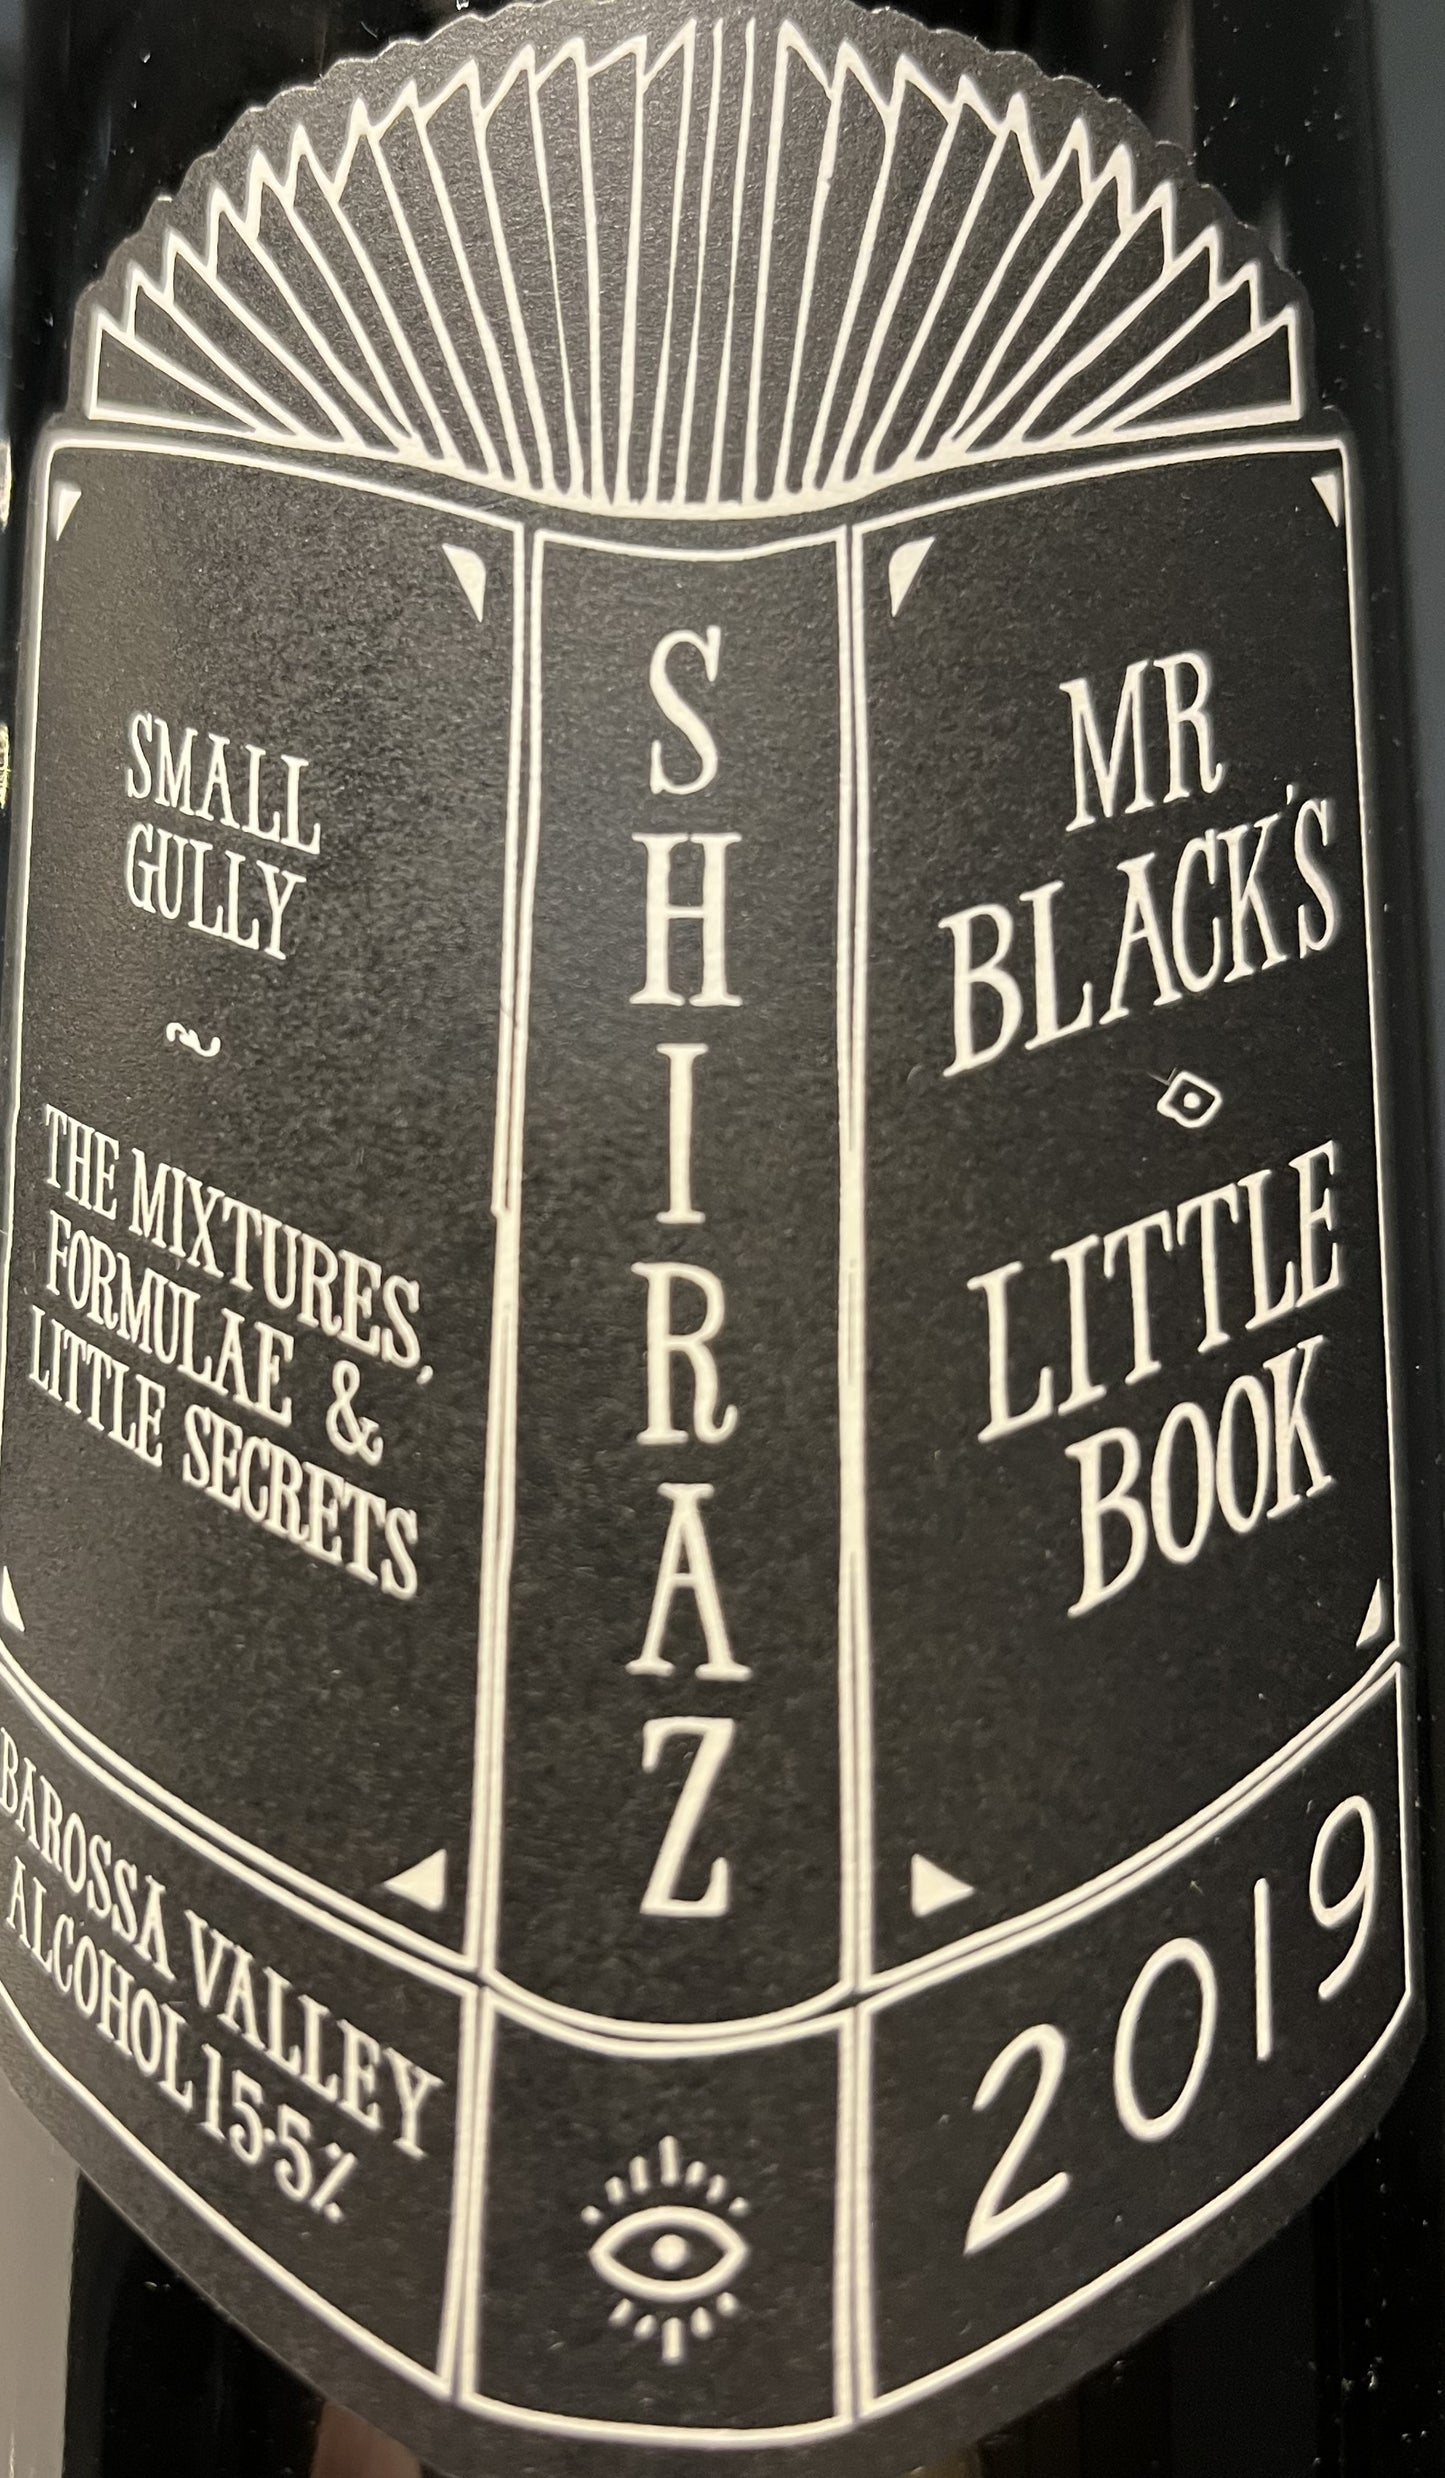 Small Gully 'Lil Books' - Shiraz